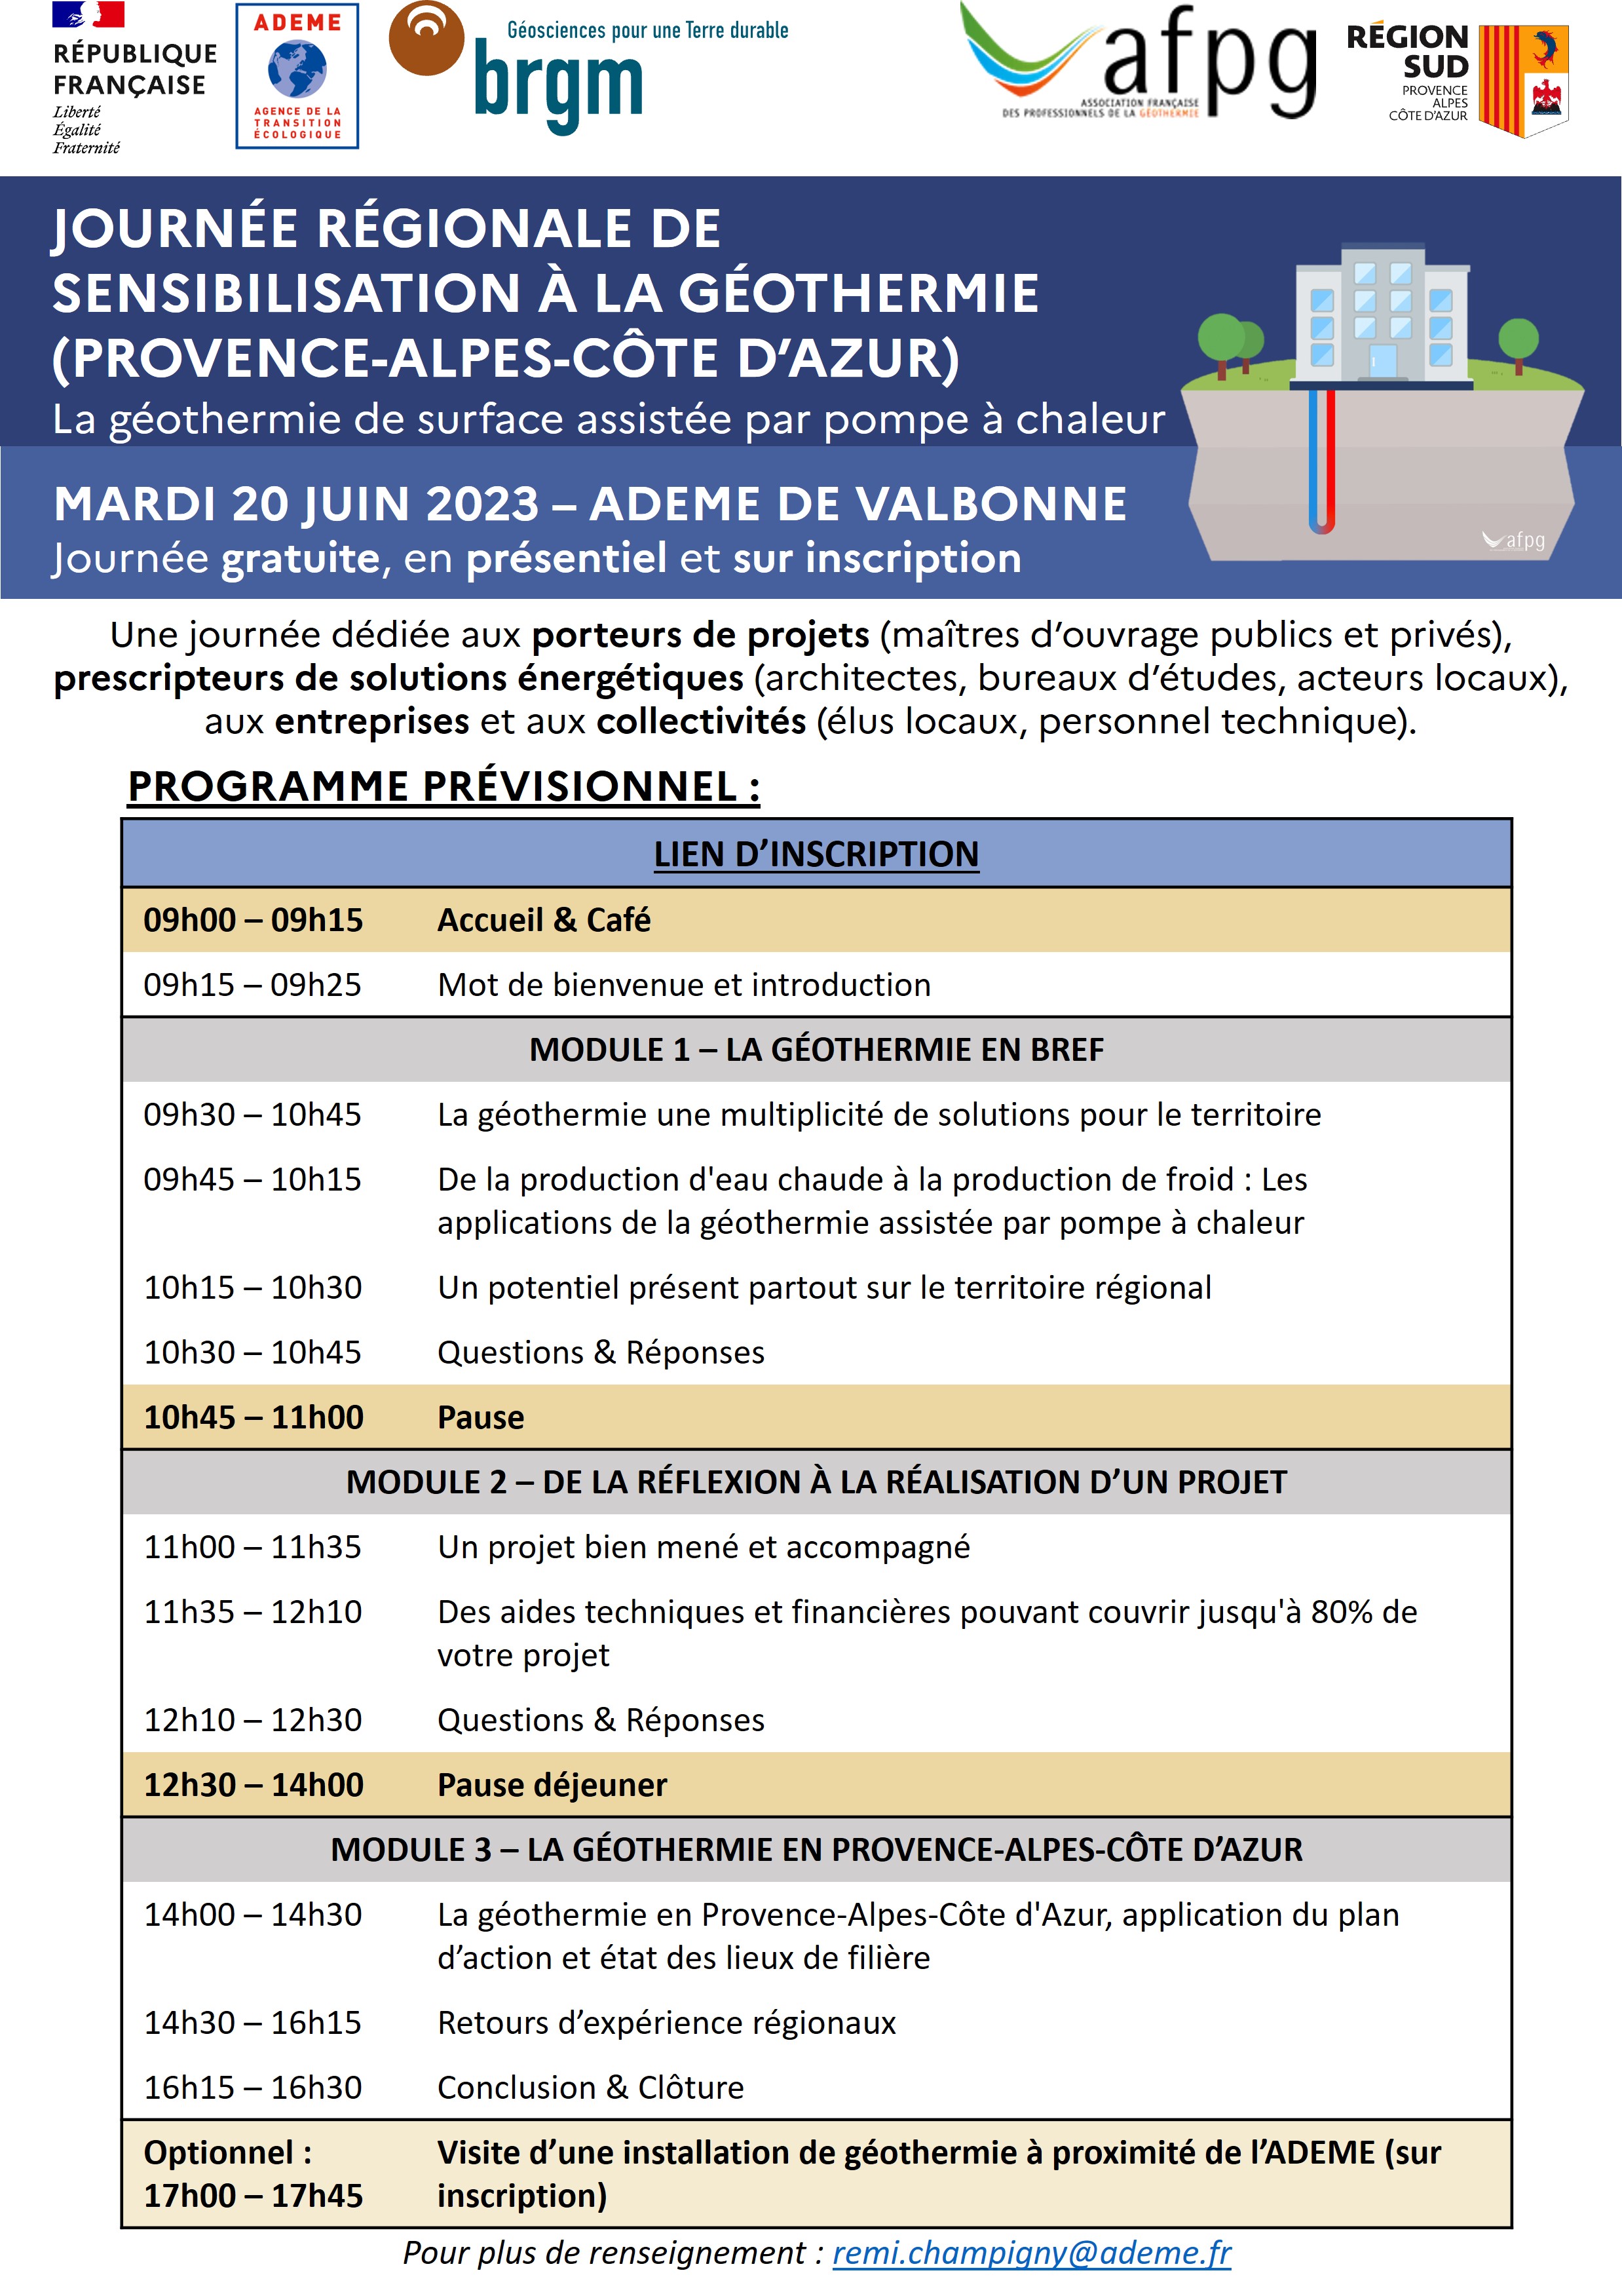 Programme prévisionnel Journée régionale de sensibilisation à la géothermie en Provence-Alpes-Côte d'Azur